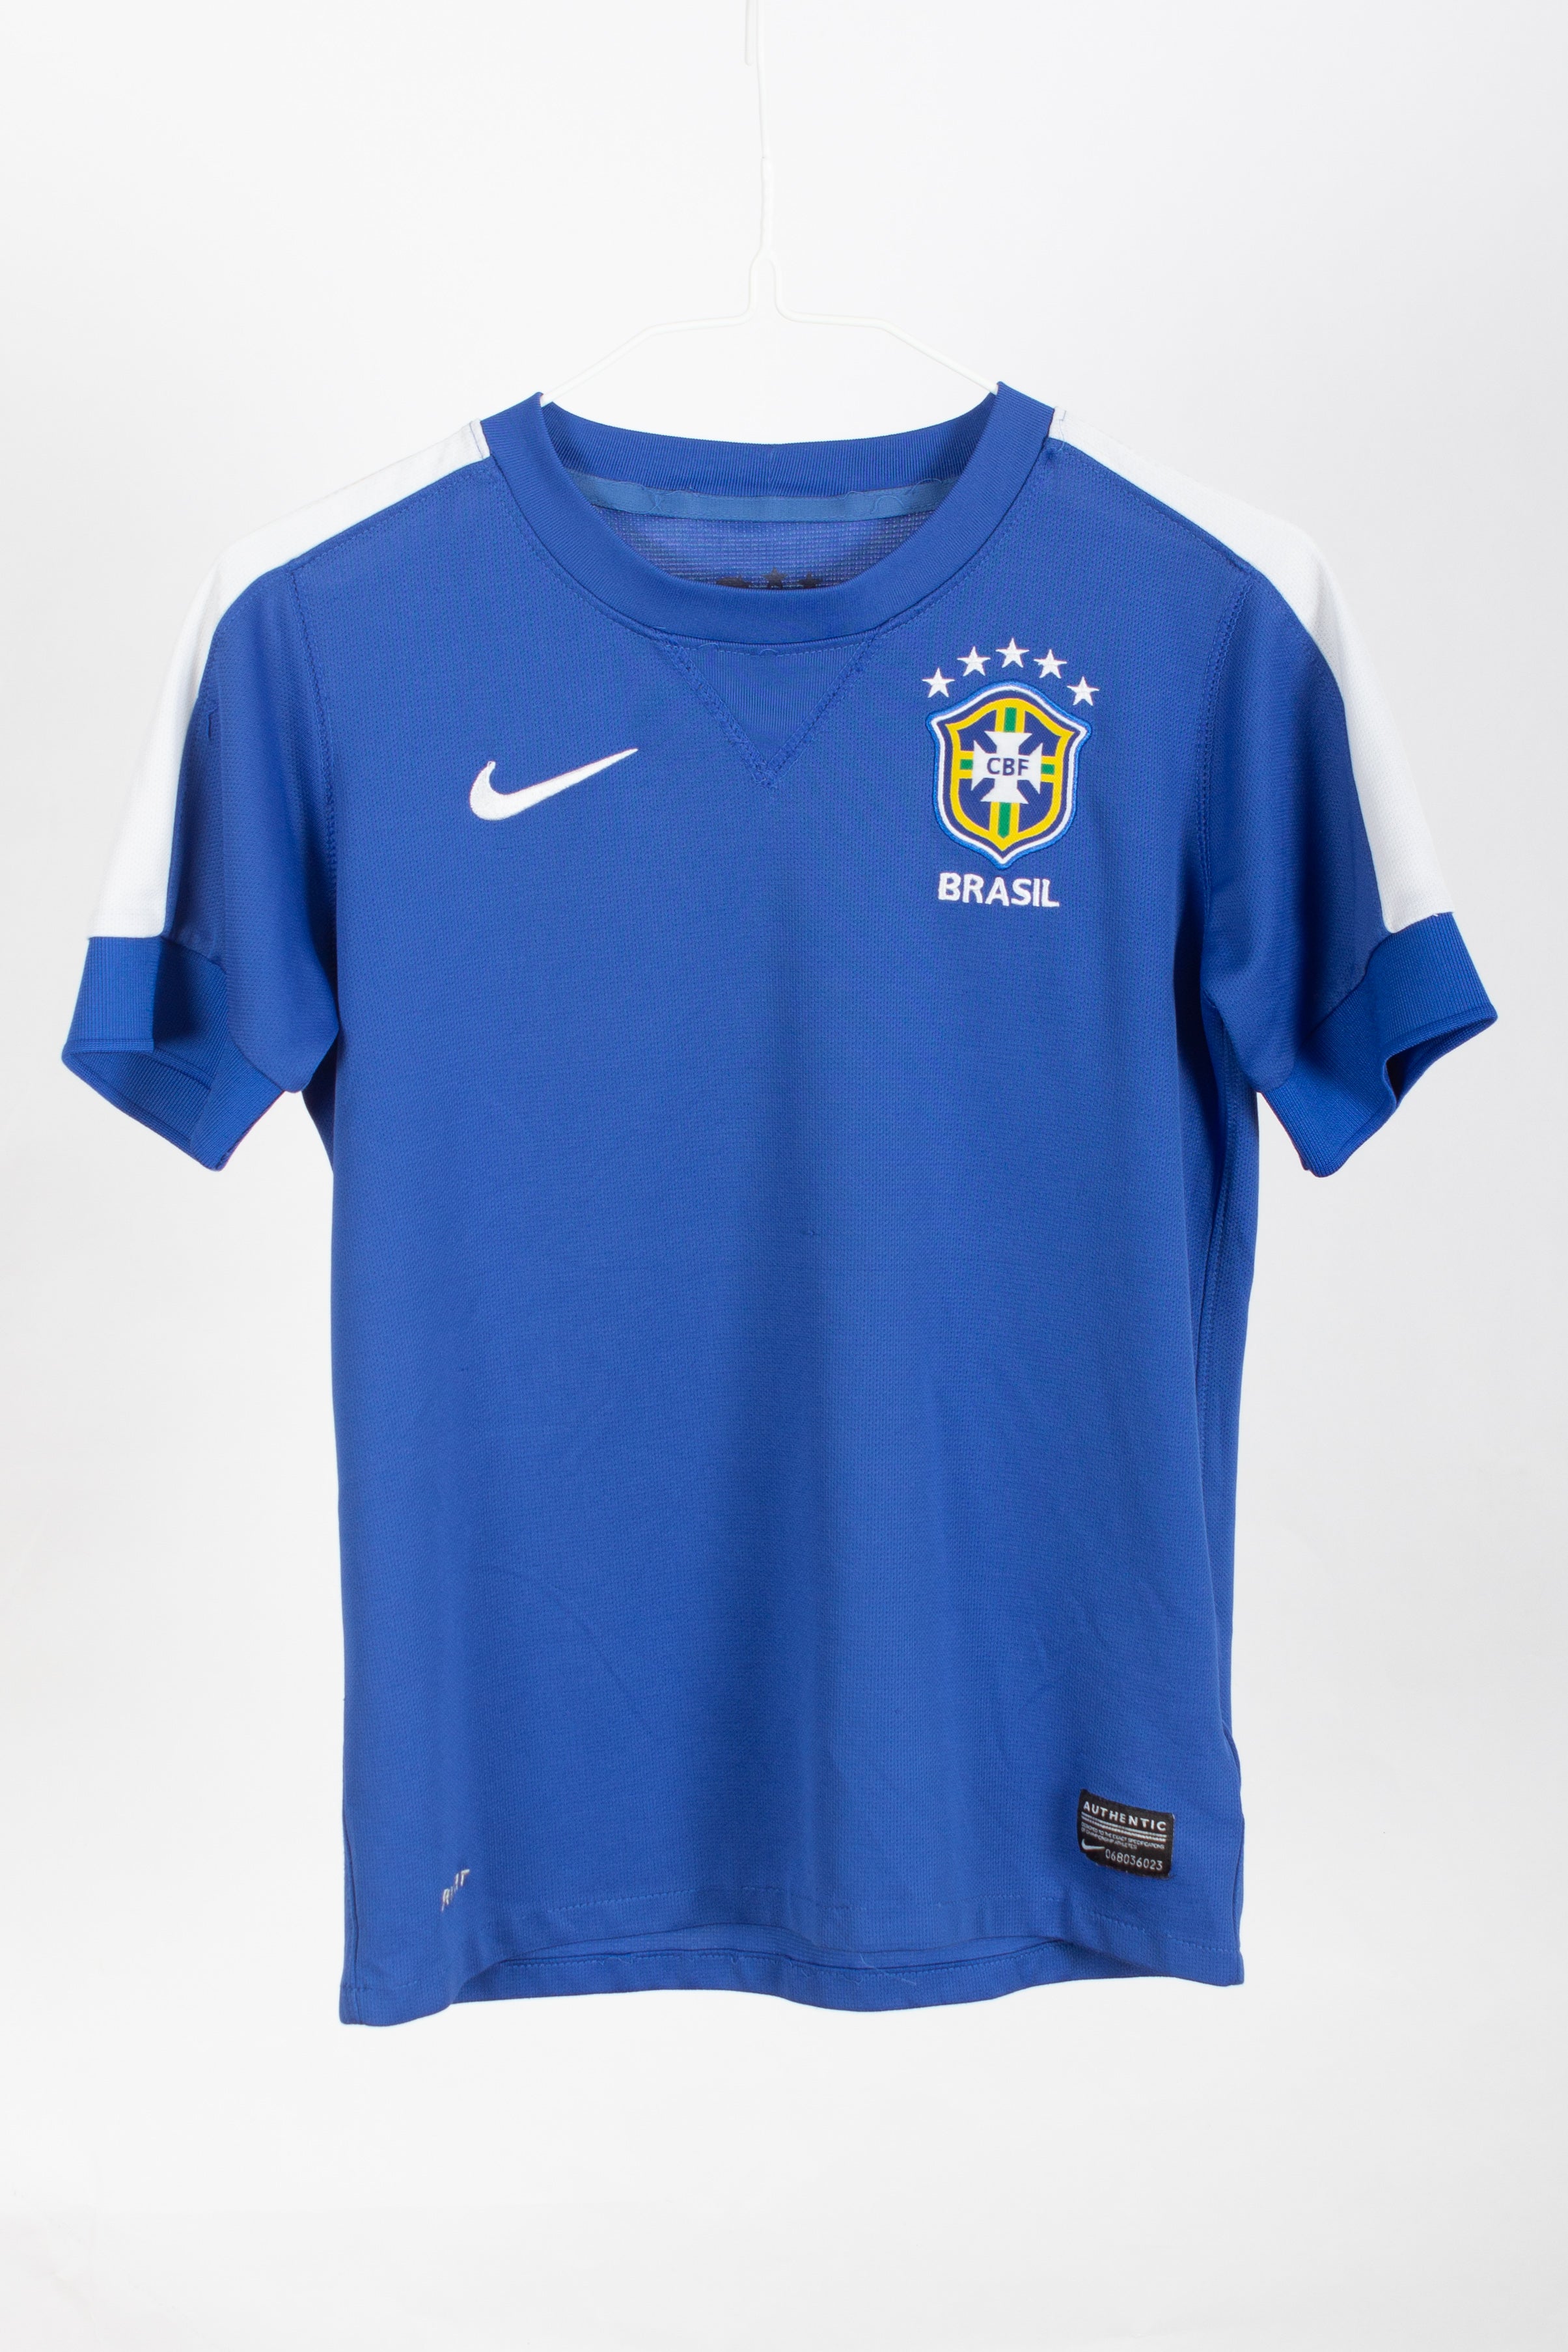 Kids Brazil 2013 Away Shirt